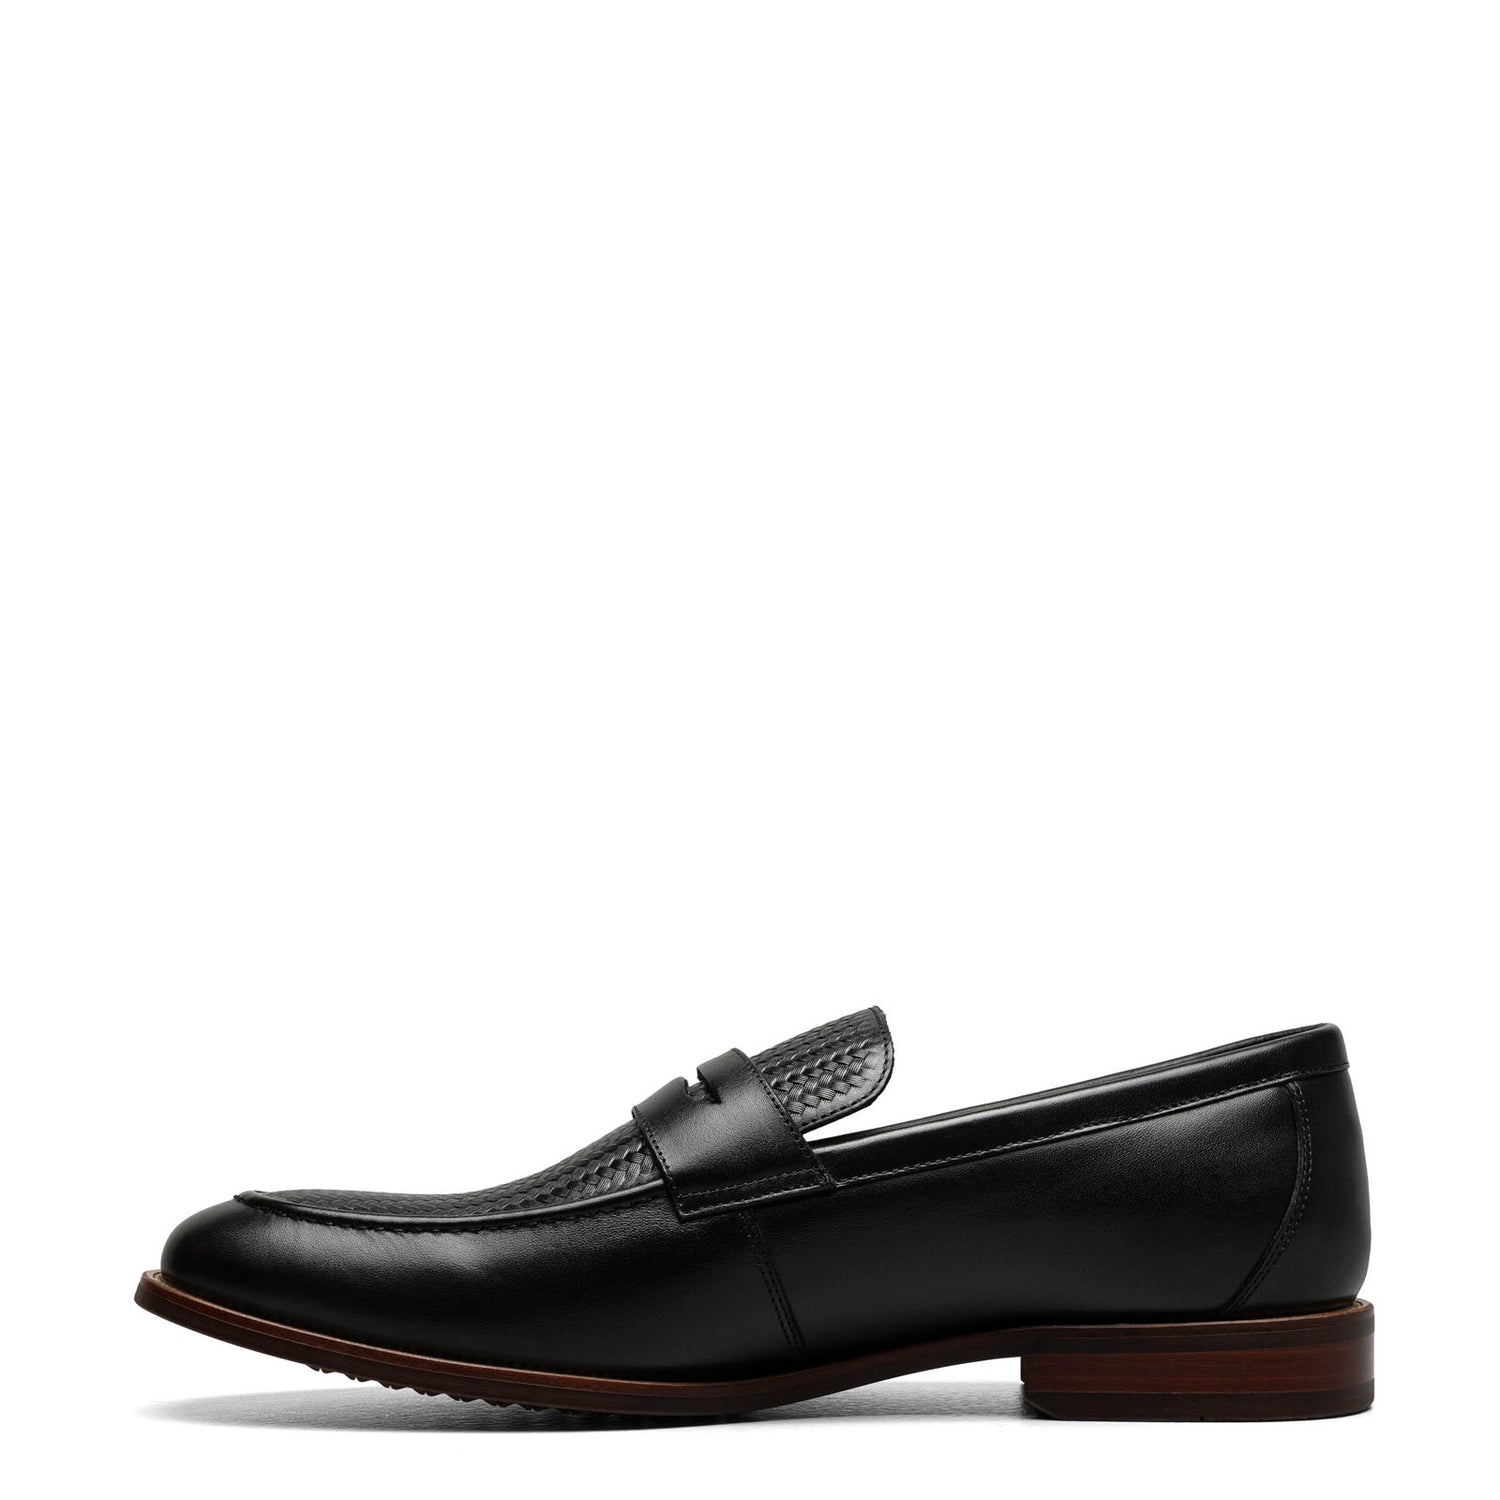 Peltz Shoes  Men's Florsheim Rucci Weave Moc Toe Penny Loafer BLACK 13408-001